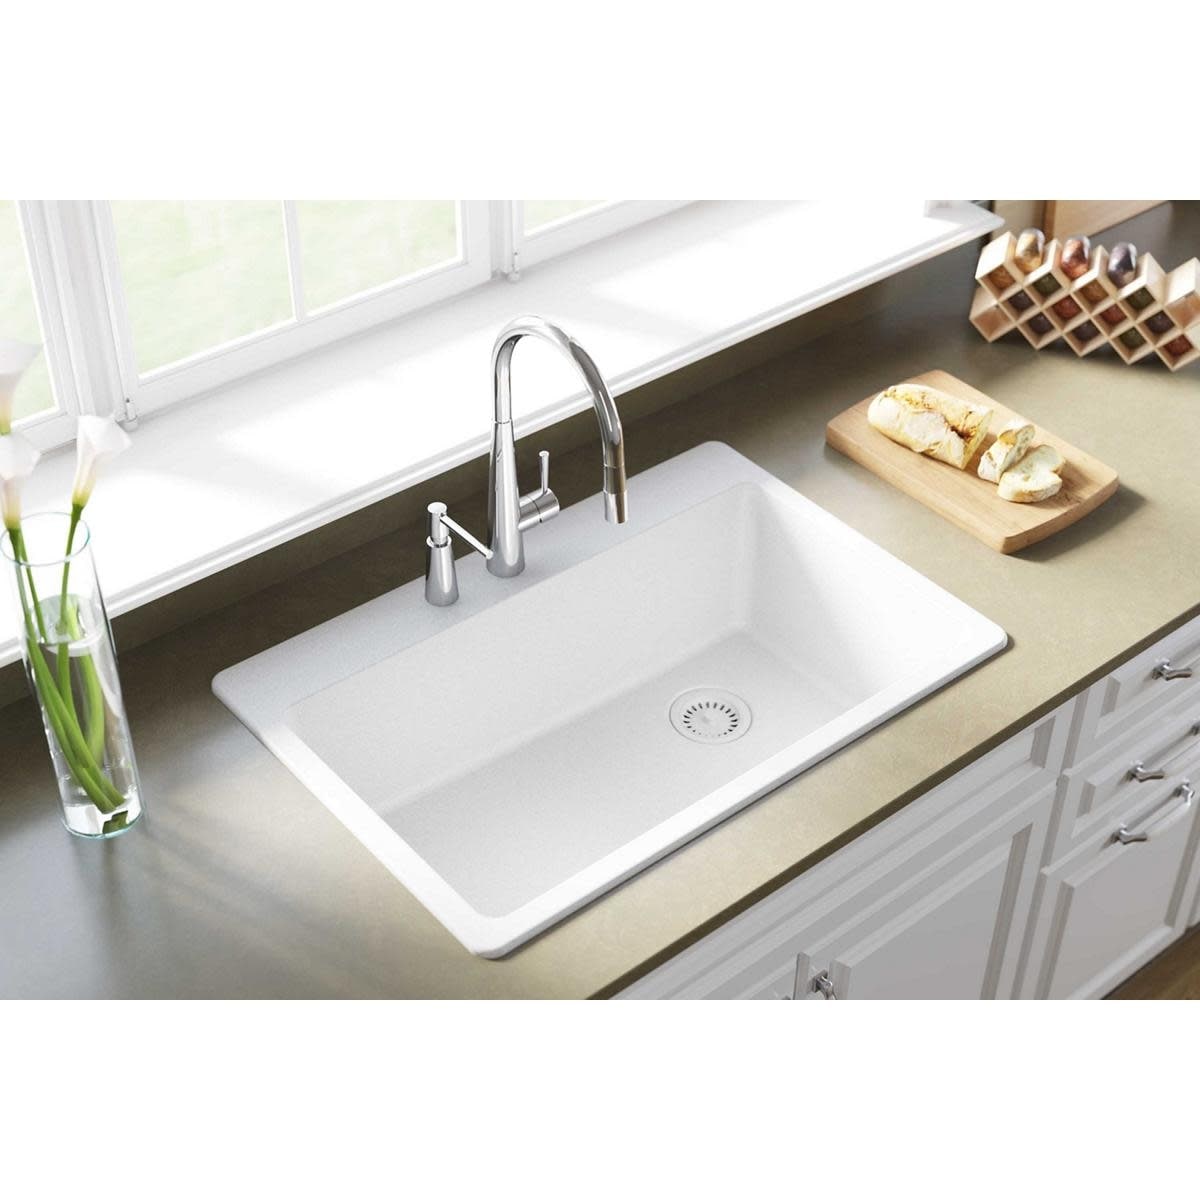 Elkay Elg2522 Gourmet 25 Single Basin Granite Composite Kitchen Sink For Drop Bathroom Sinks Sinks